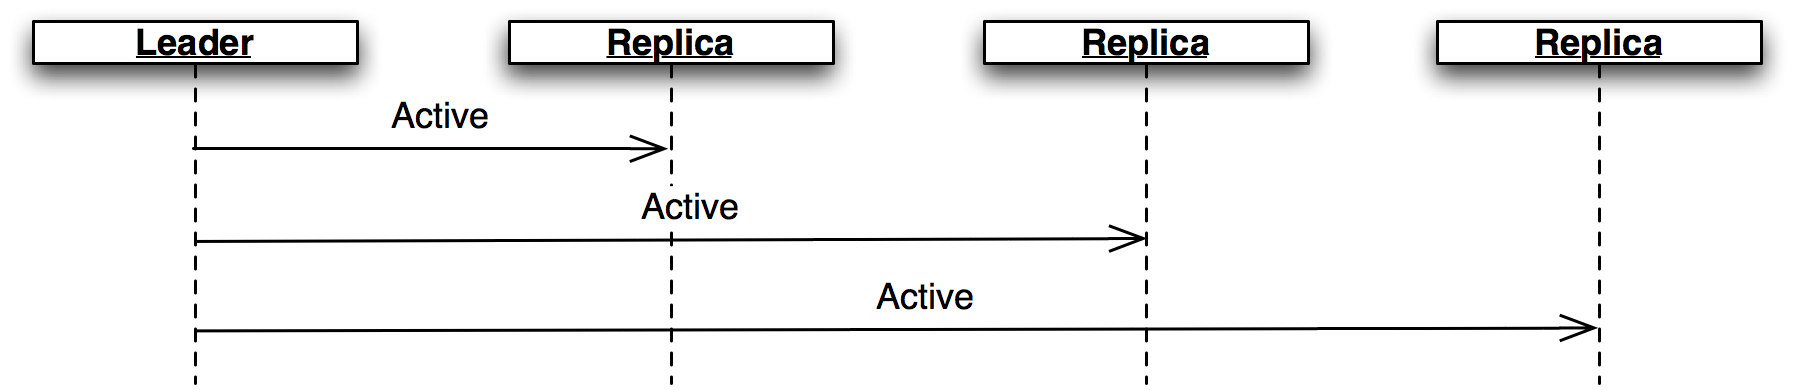 Figure 3.5 - Active